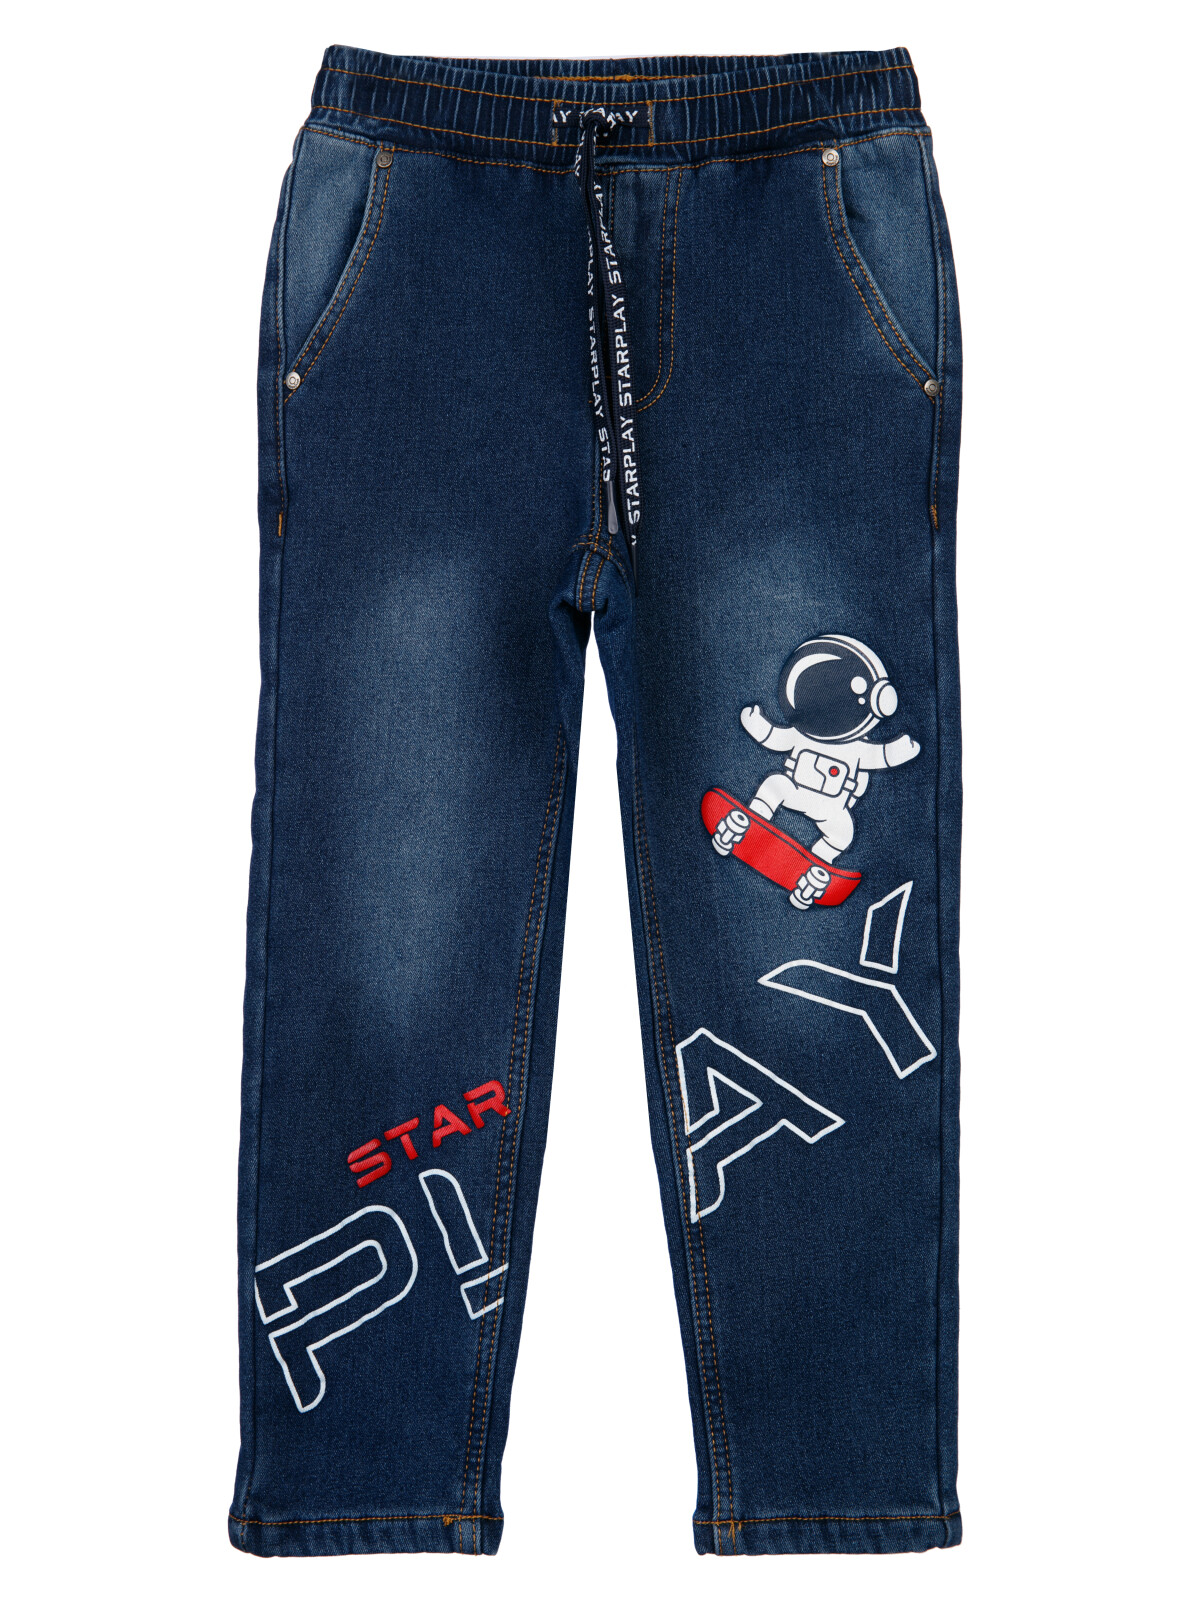 Брюки текстильные джинсовые утепленные флисом для мальчиков PlayToday, тёмно-синий, 116